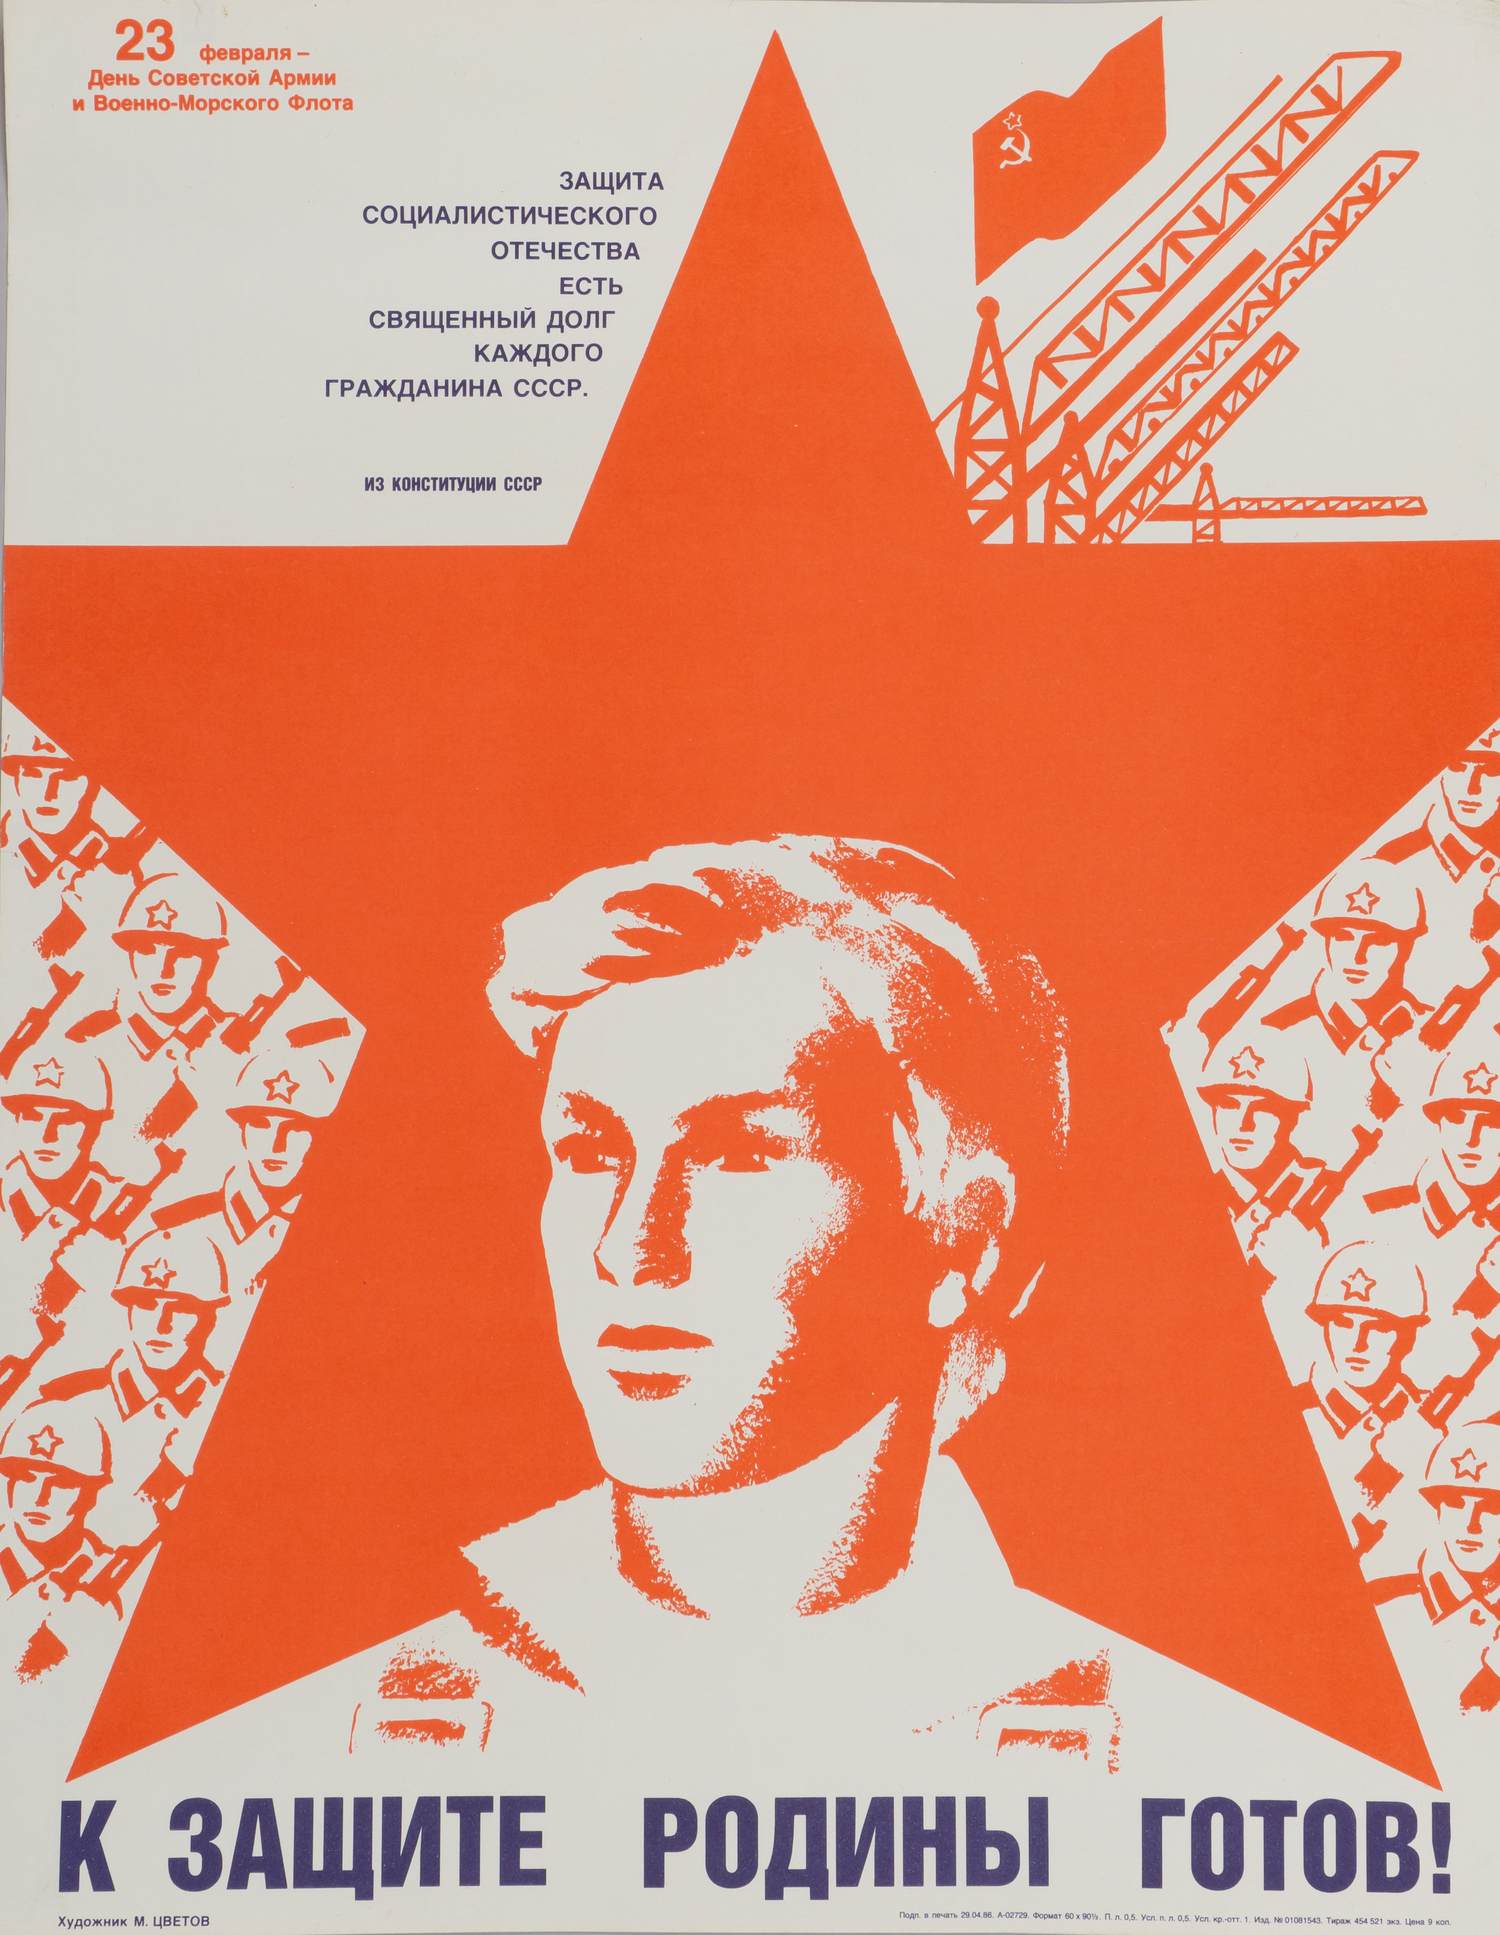 Цветов М.И. Плакат «К защите Родины готов!» 1986.